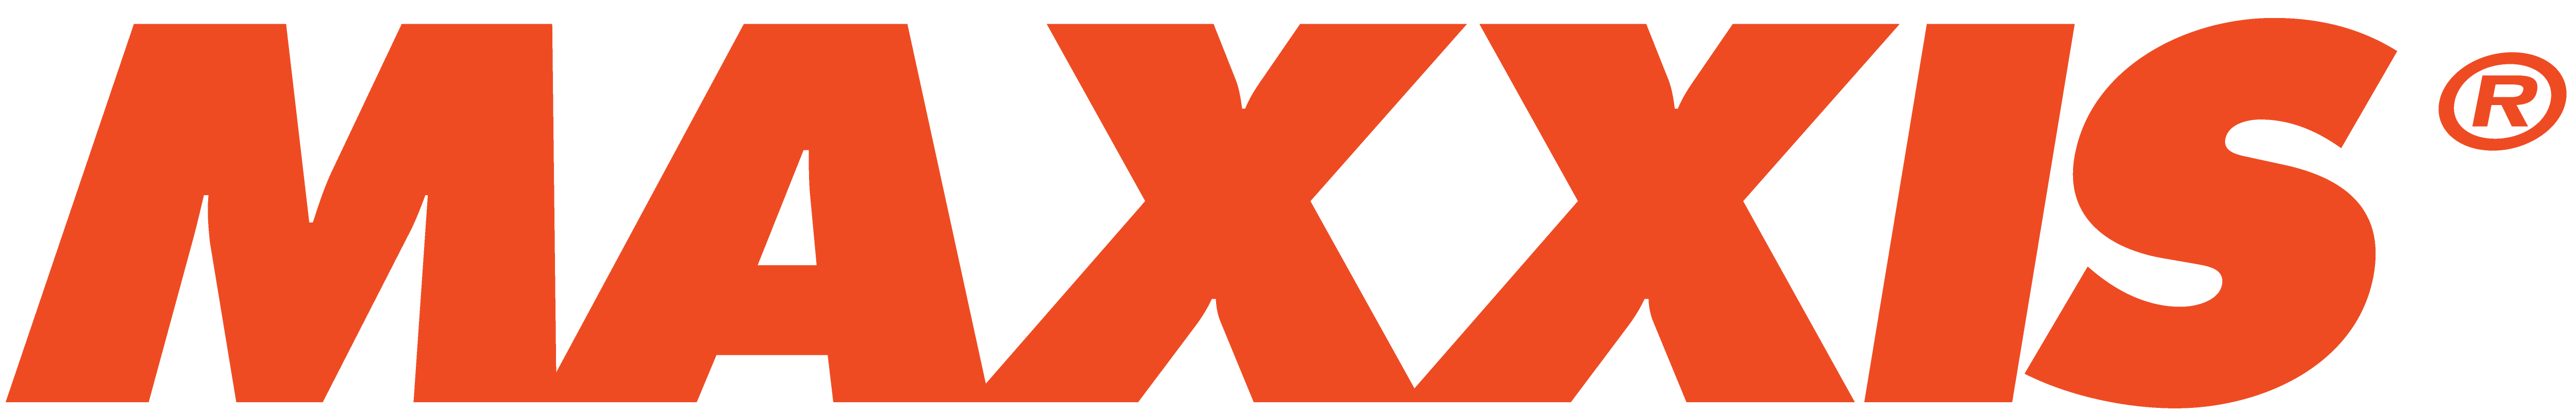 Maxxis Gear